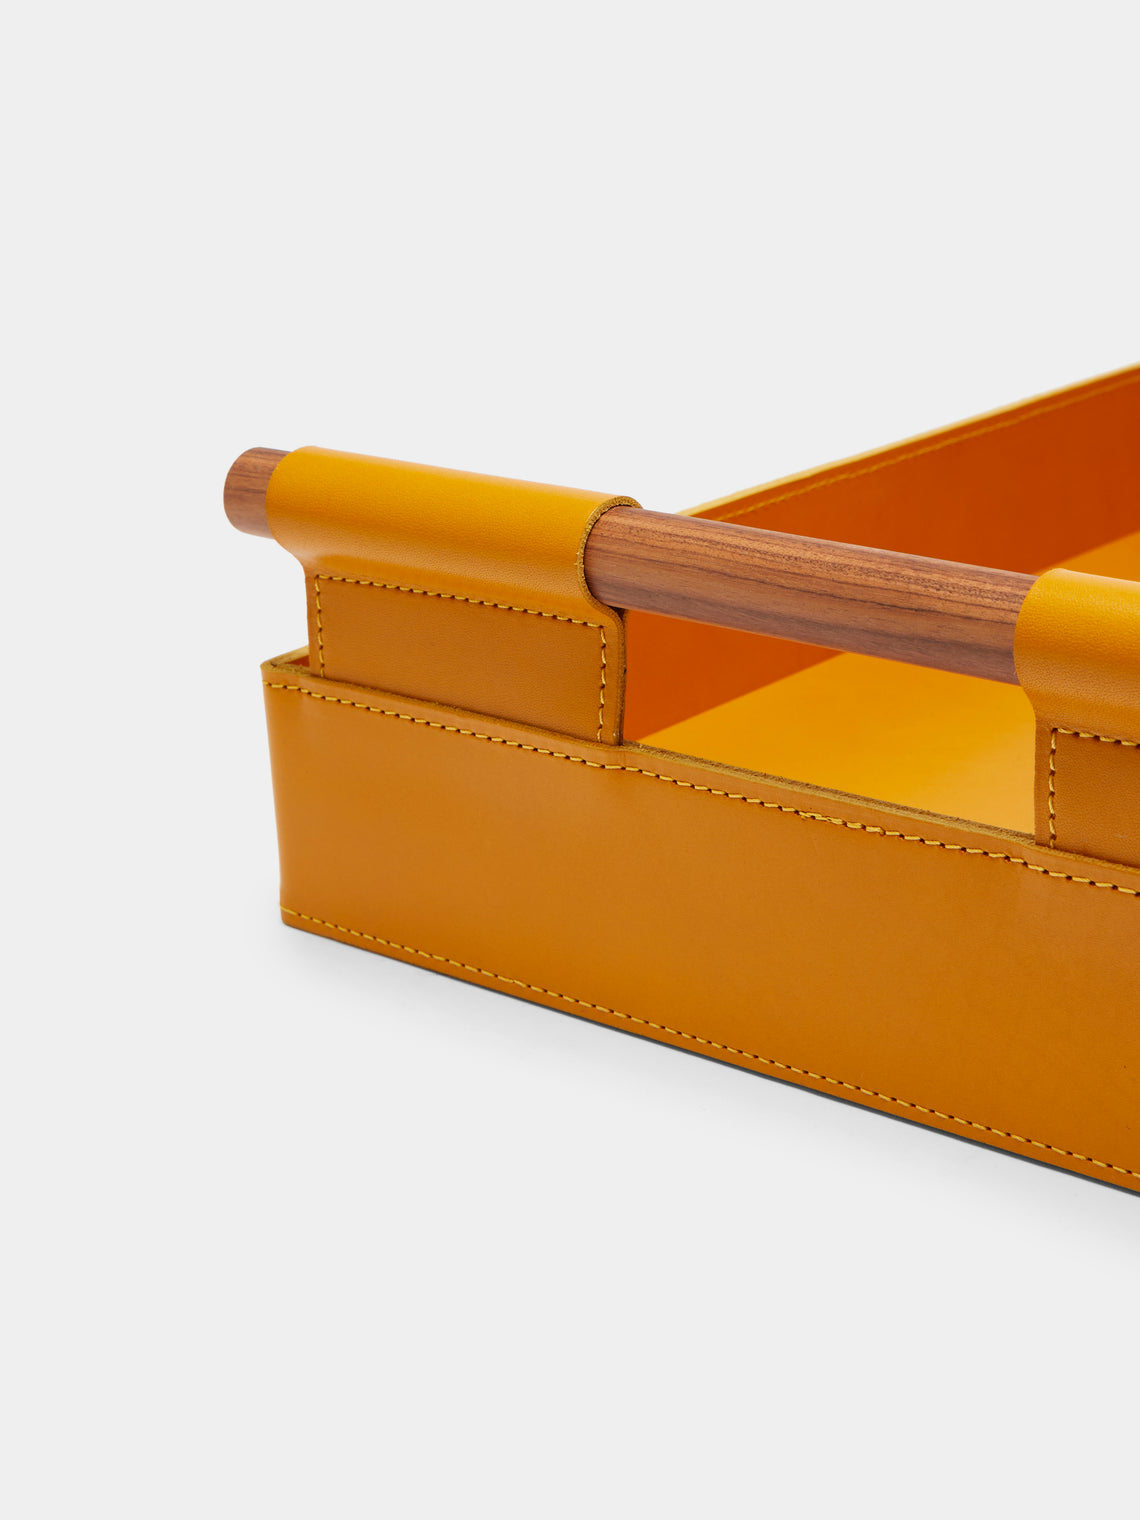 Rabitti 1969 - Sorrento Leather Tray - Yellow - ABASK